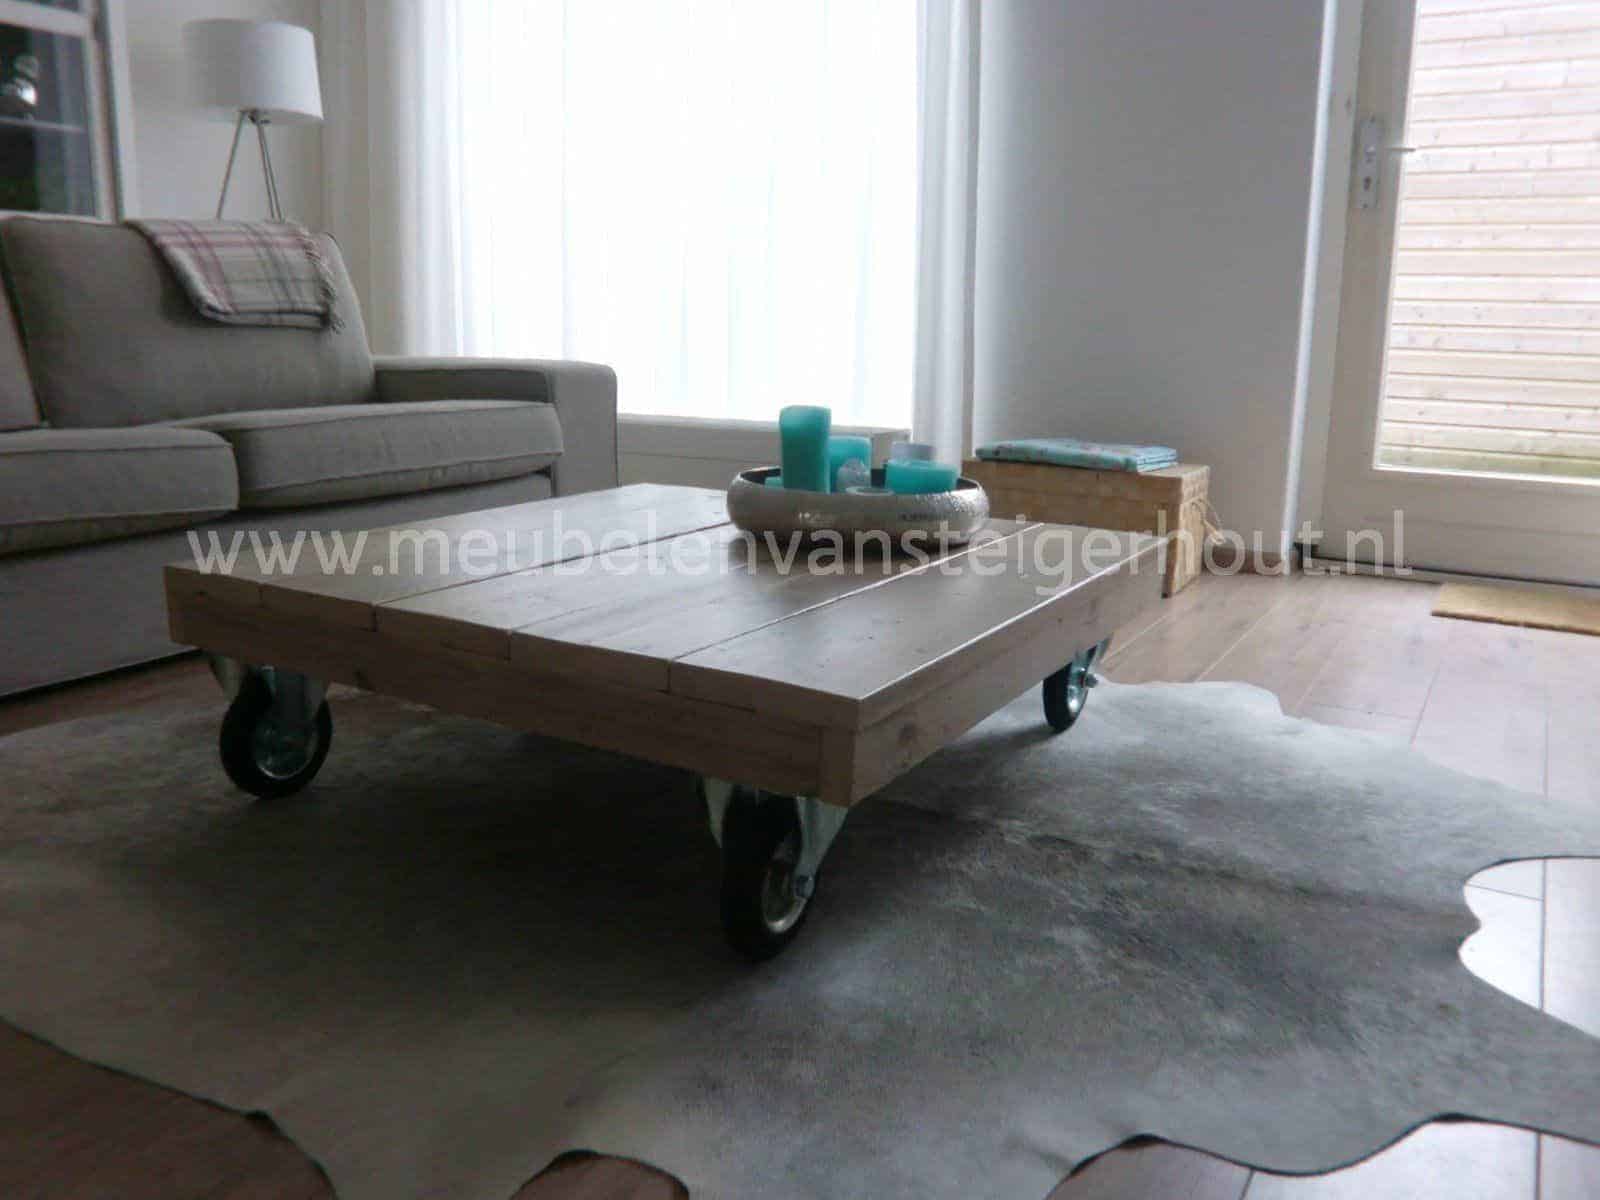 Steigerhouten salontafel op grote wielen, model design